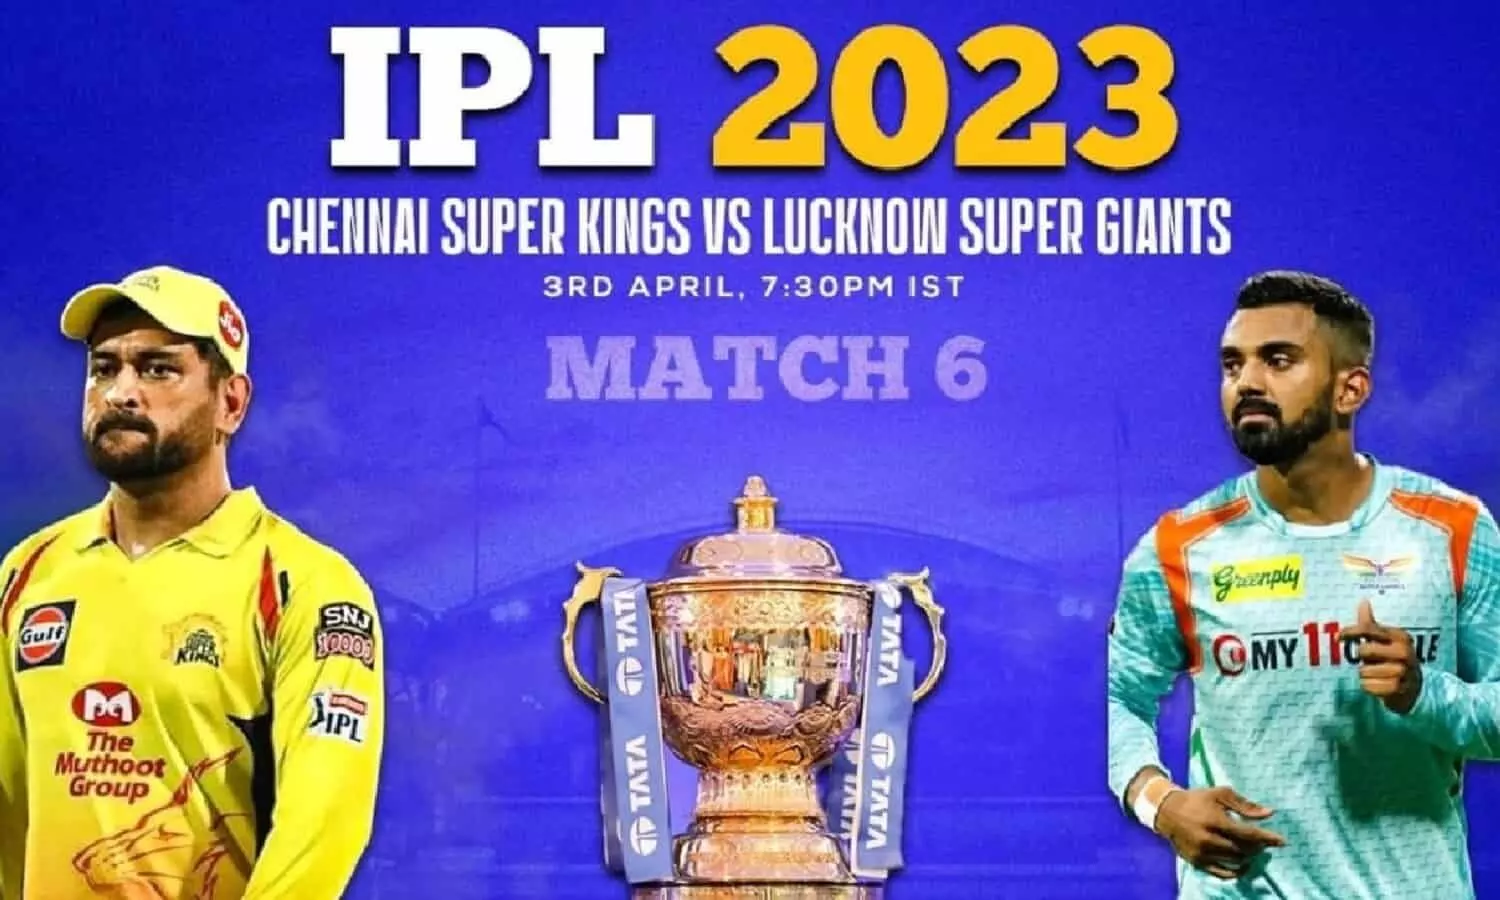 आईपीएल 2023 का छठा मुकाबला आज, चेन्नई सुपर किंग्स और लखनऊ सुपर जायंट्स के बीच होगा खेल